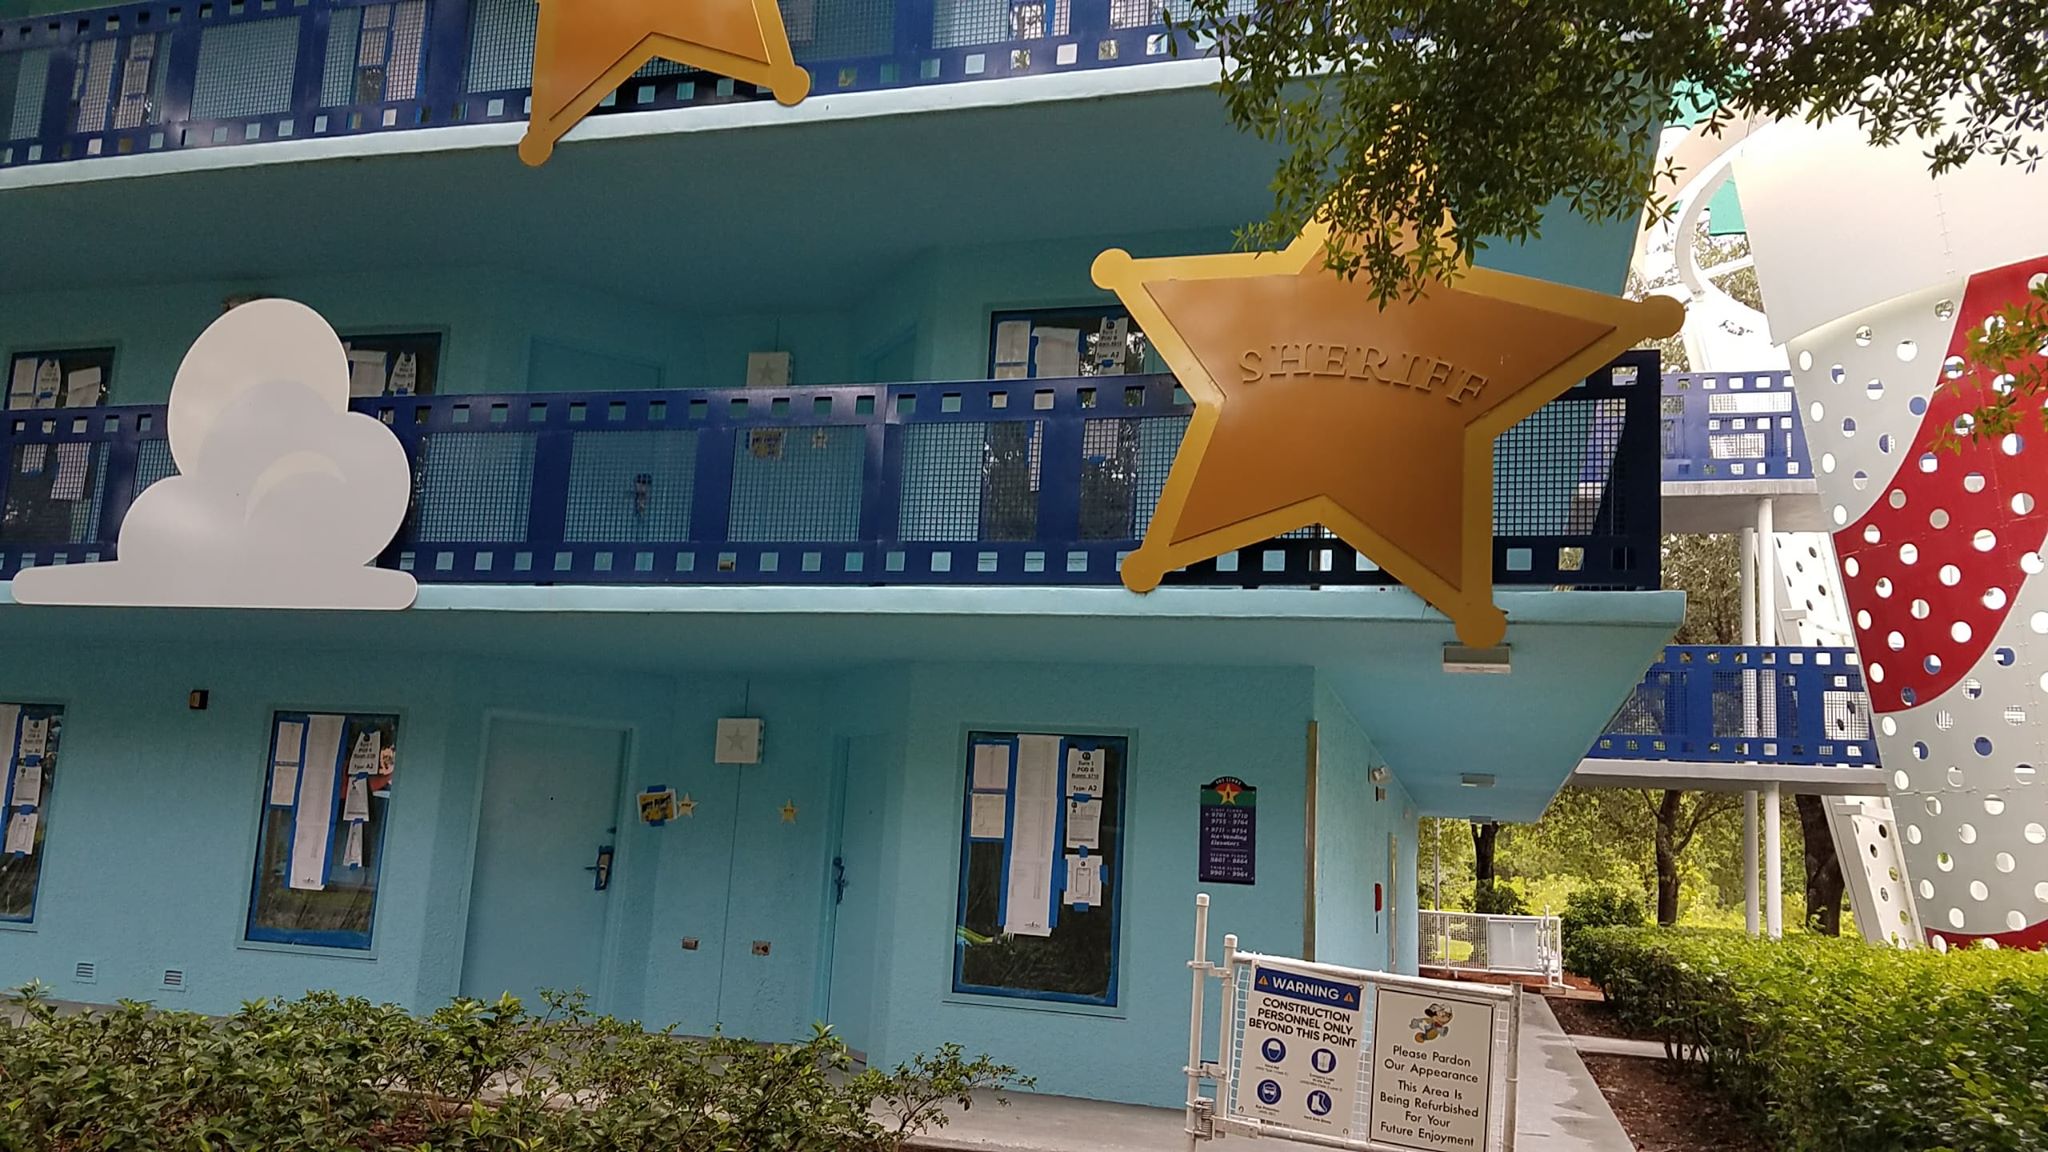 Update on All-Star Movies Resort Refurbishment